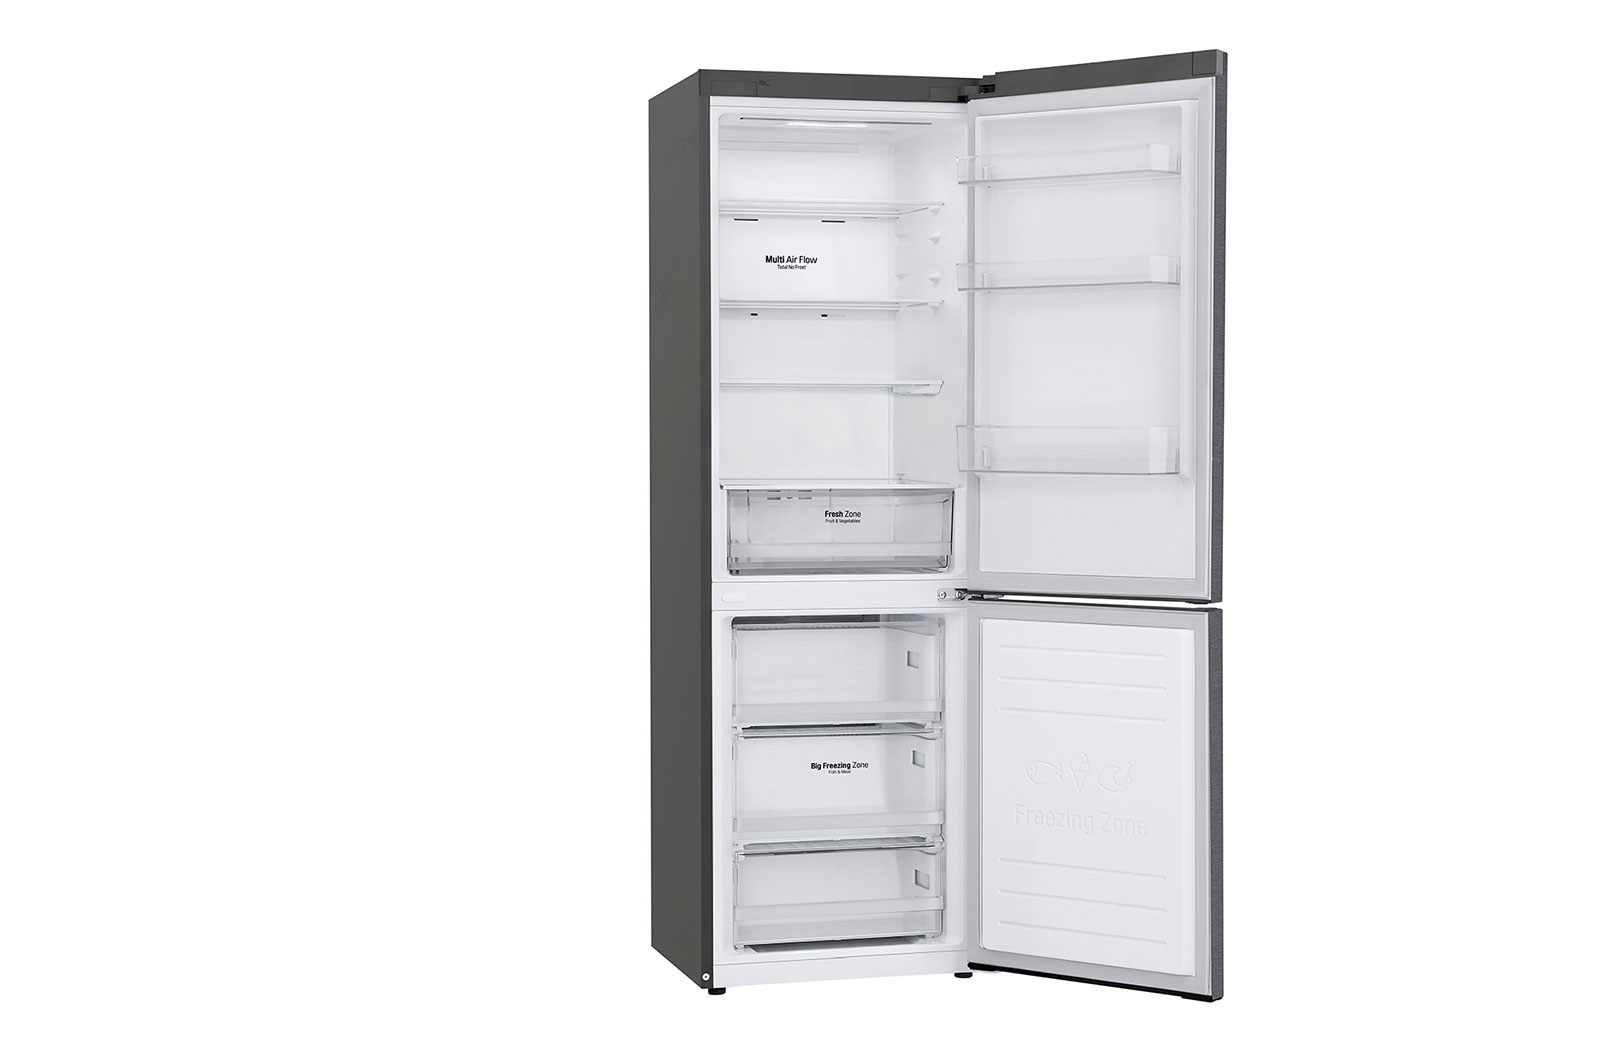 Lg ga b509mqsl. Холодильник LG DOORCOOLING+ ga-b509 CQSL. Холодильник LG ga-b509cqtl белый. Холодильник LG GC-b459sbum. Холодильник LG DOORCOOLING+ ga-b509 Mesl.